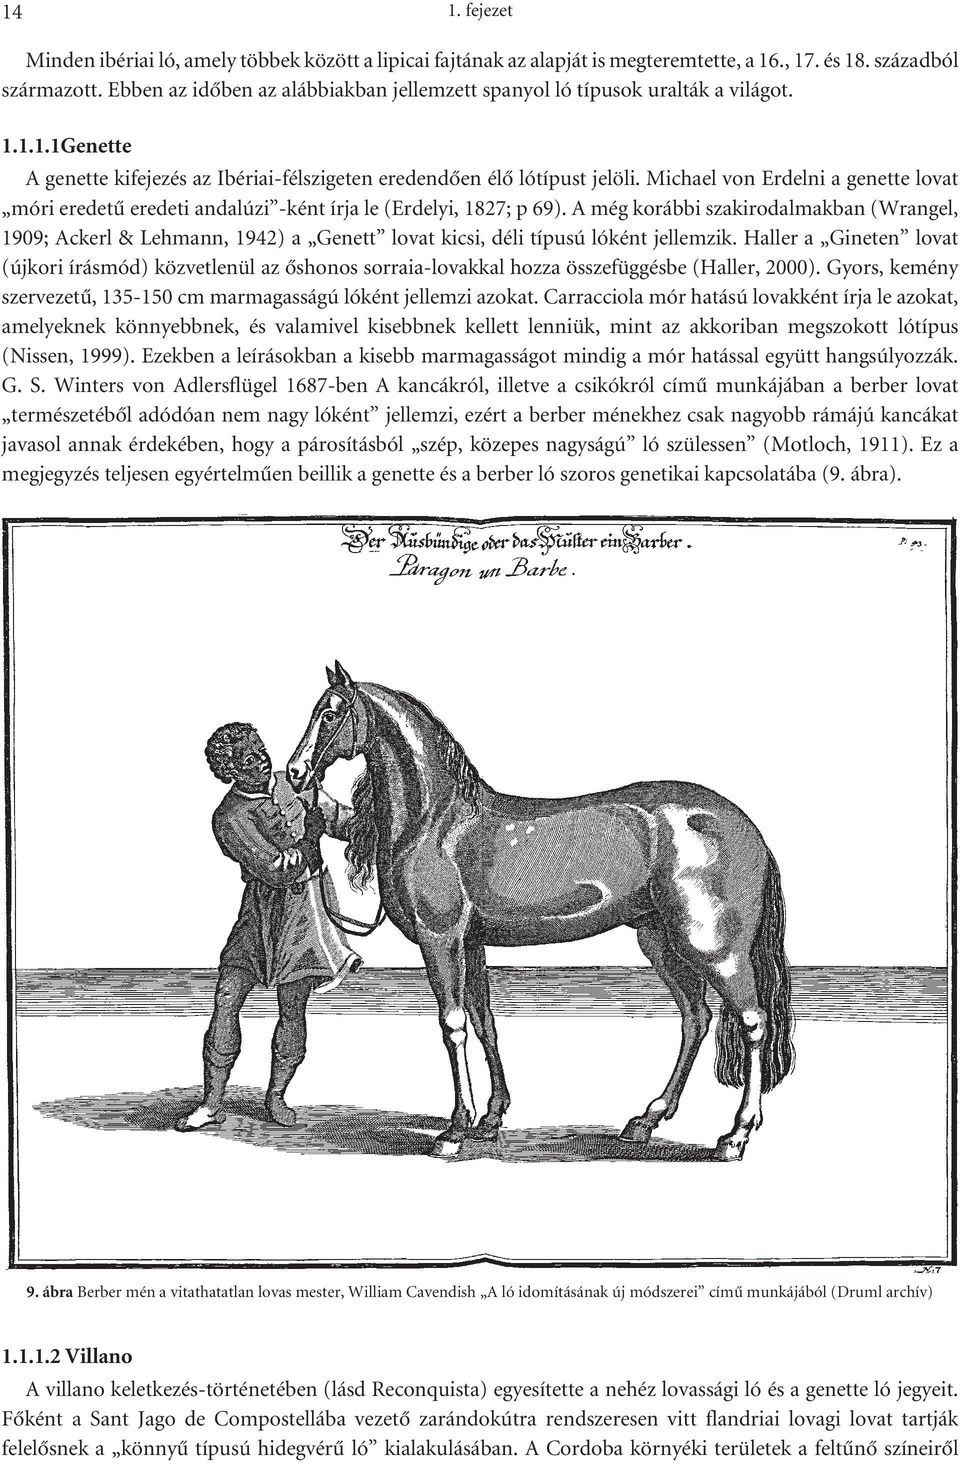 Michael von Erdelni a genette lovat móri eredetû eredeti andalúzi -ként írja le (Erdelyi, 1827; p 69).